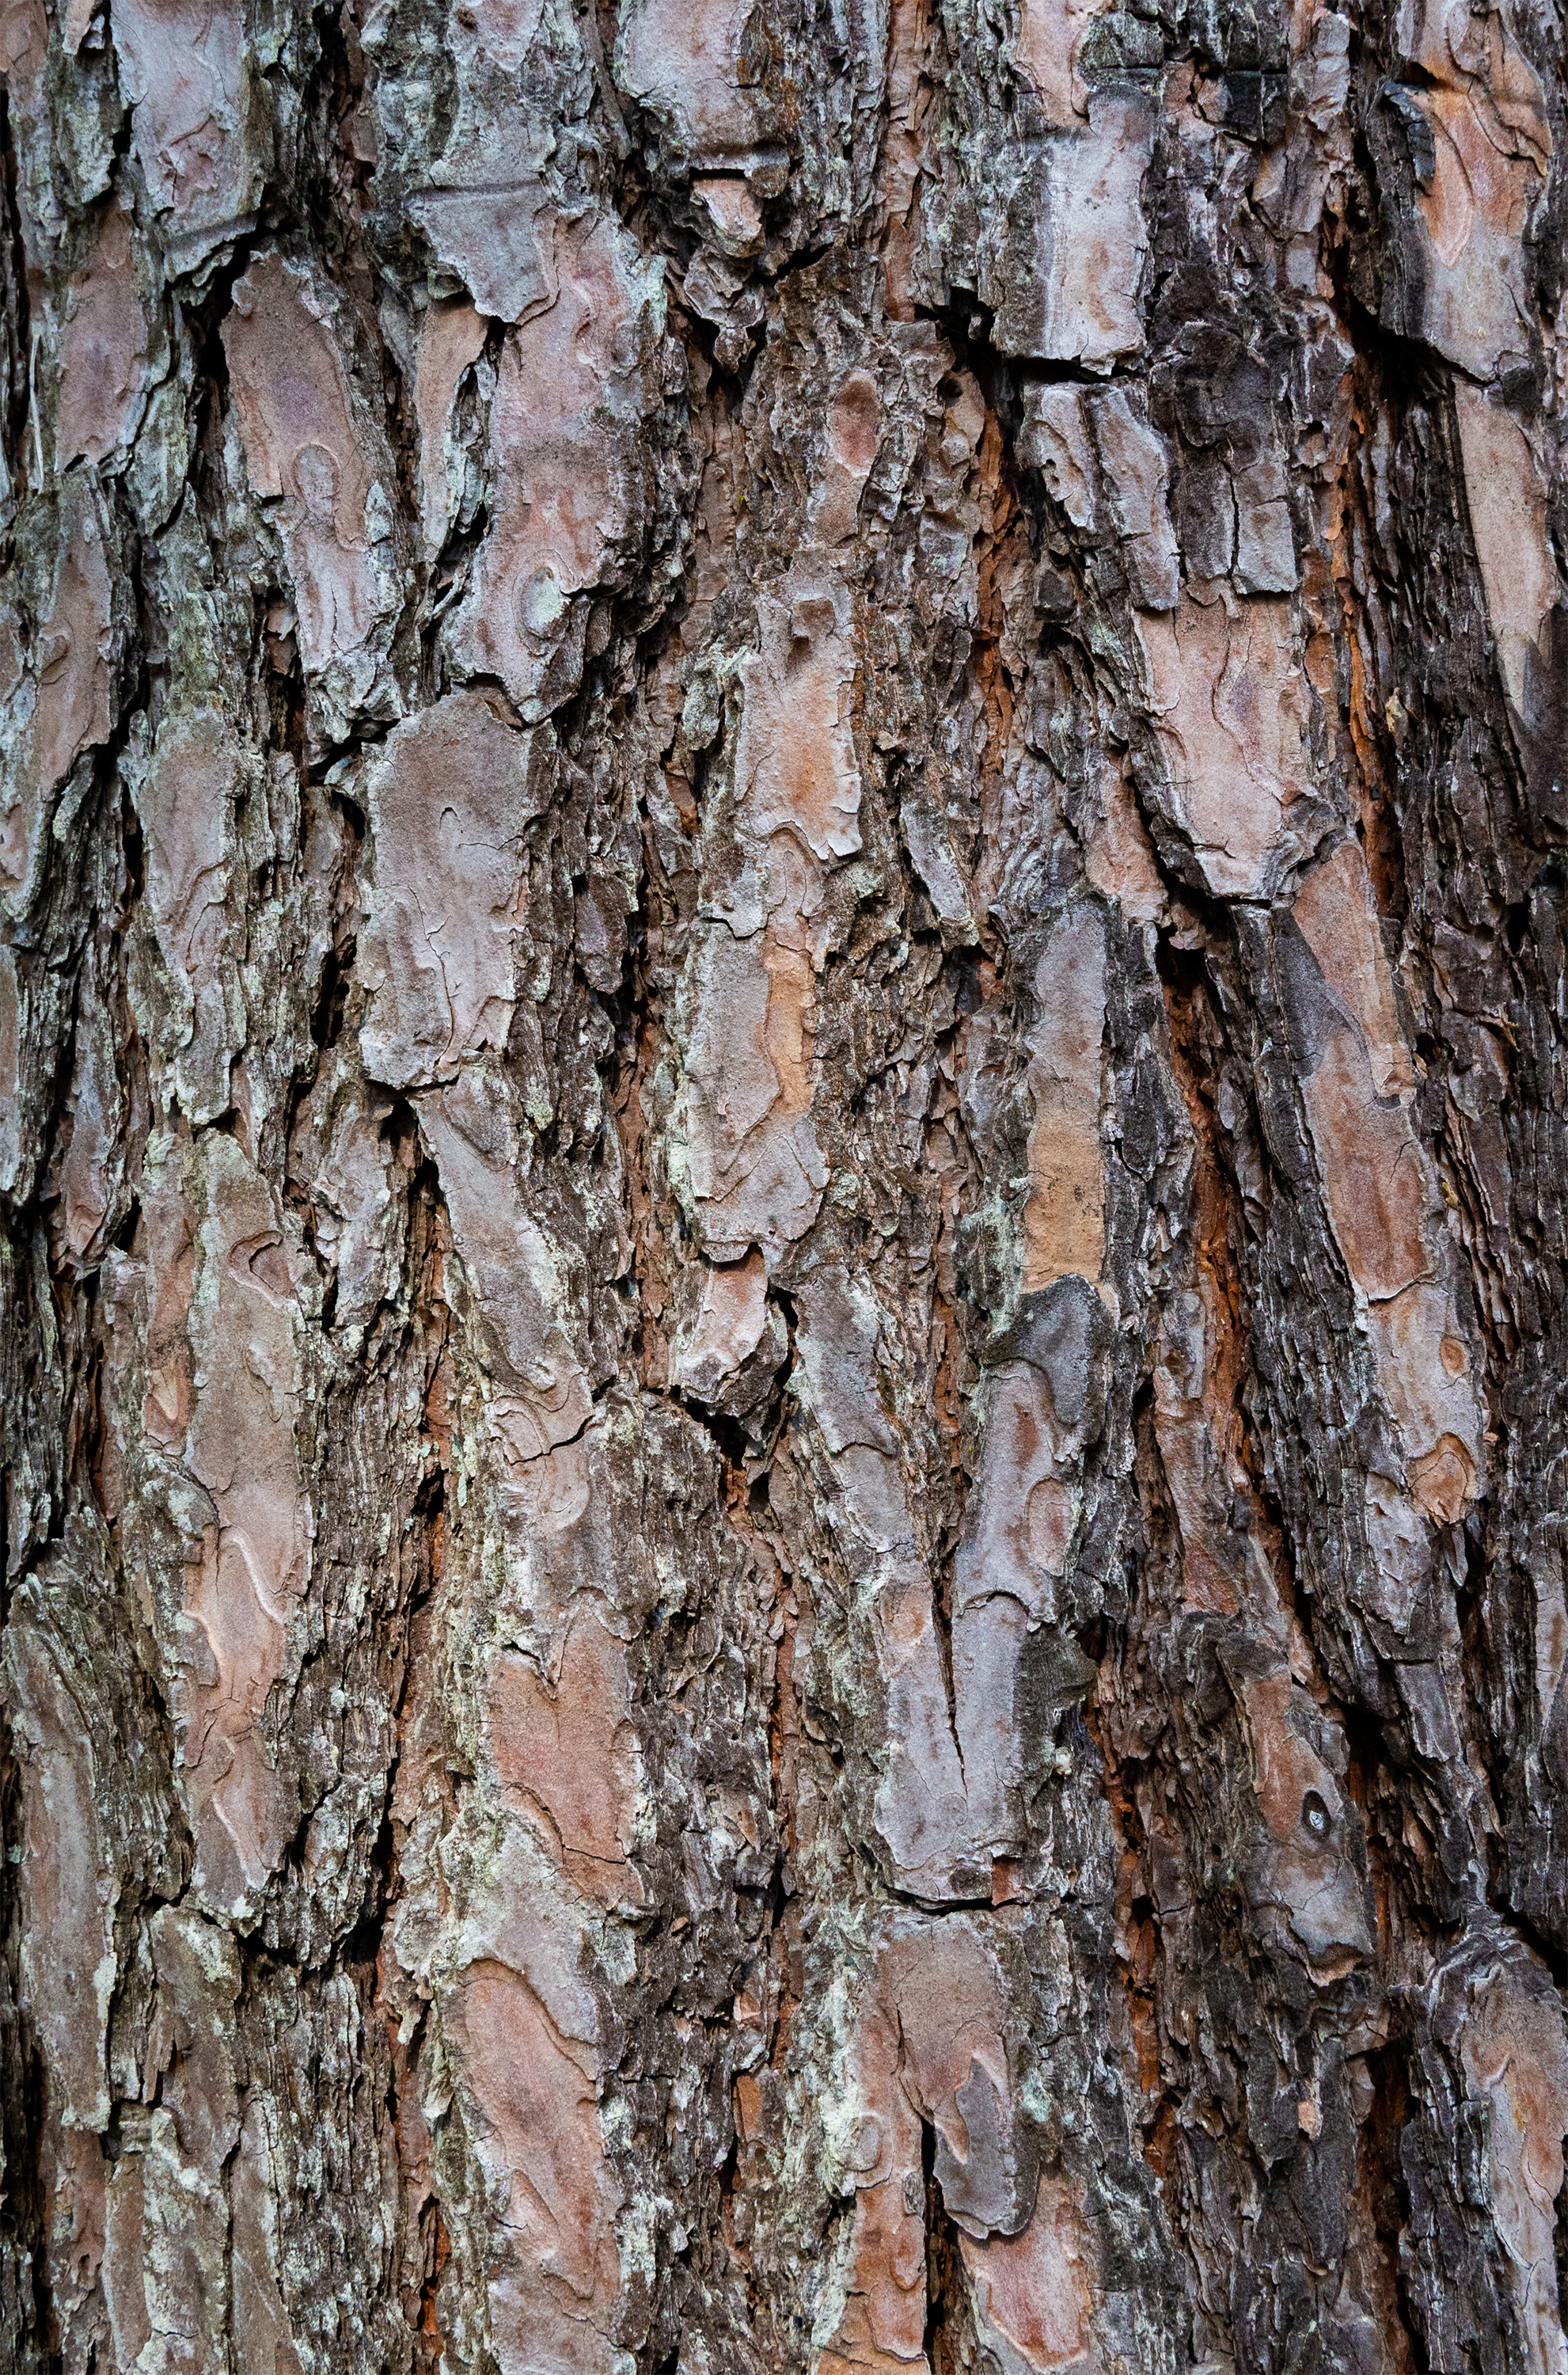 松の木肌のテクスチャー03 無料の高画質フリー写真素材 イメージズラボ